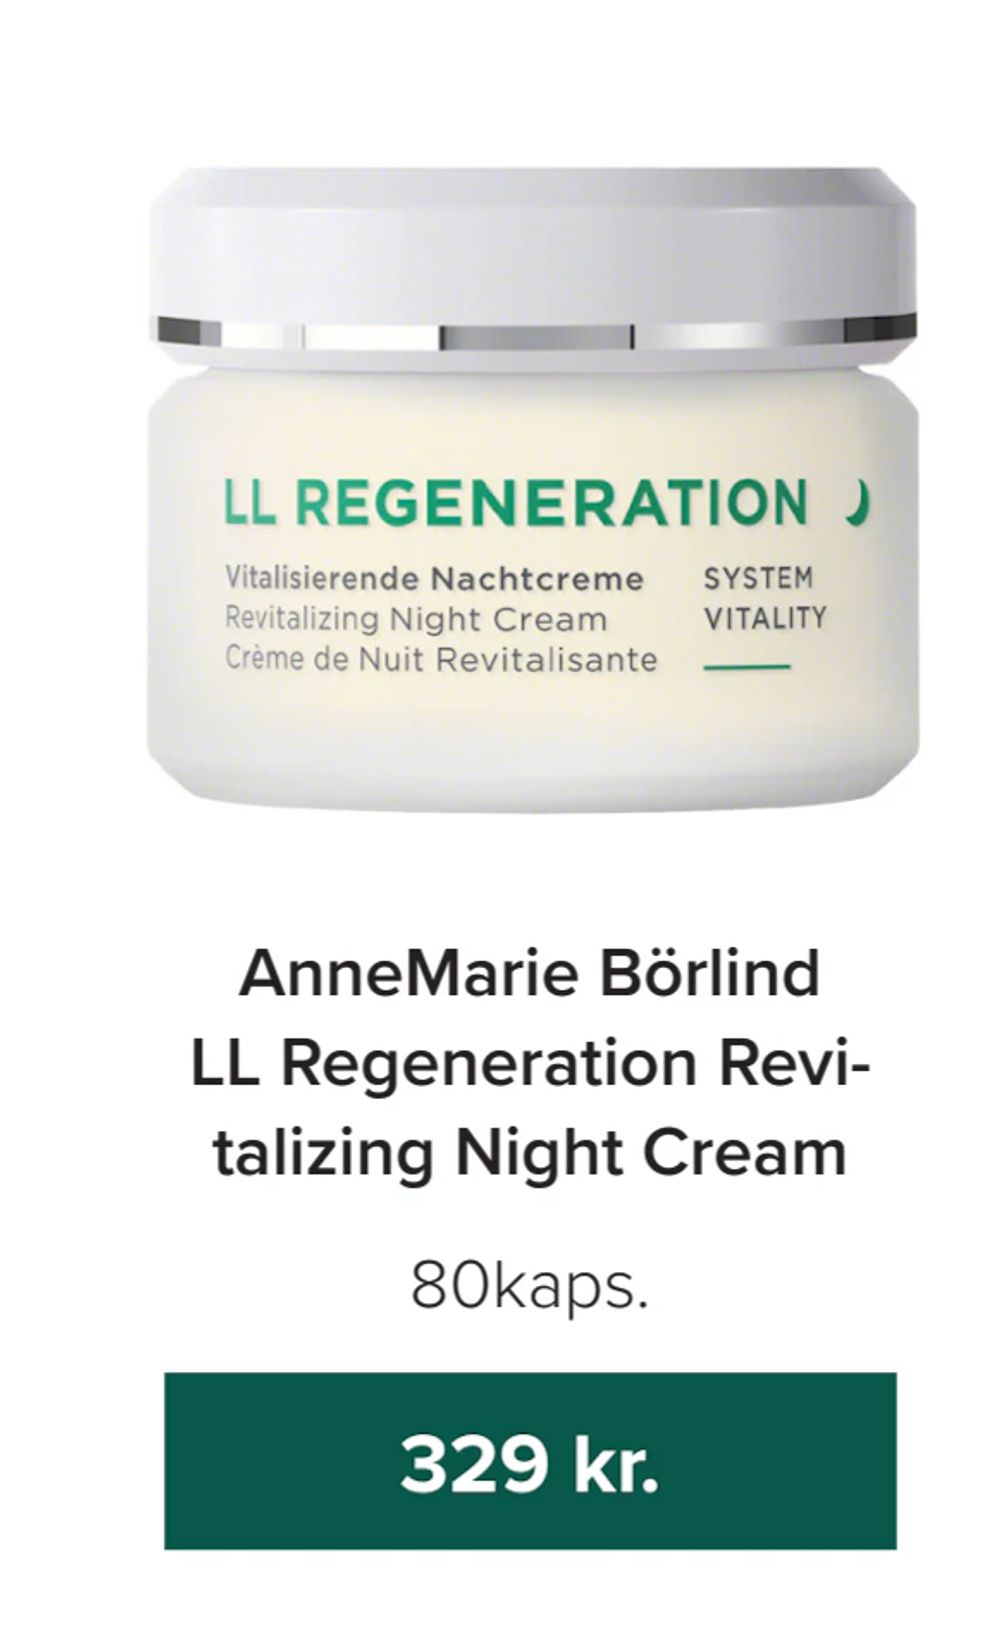 Tilbud på AnneMarie Börlind LL Regeneration Revitalizing Night Cream fra Helsemin til 329 kr.